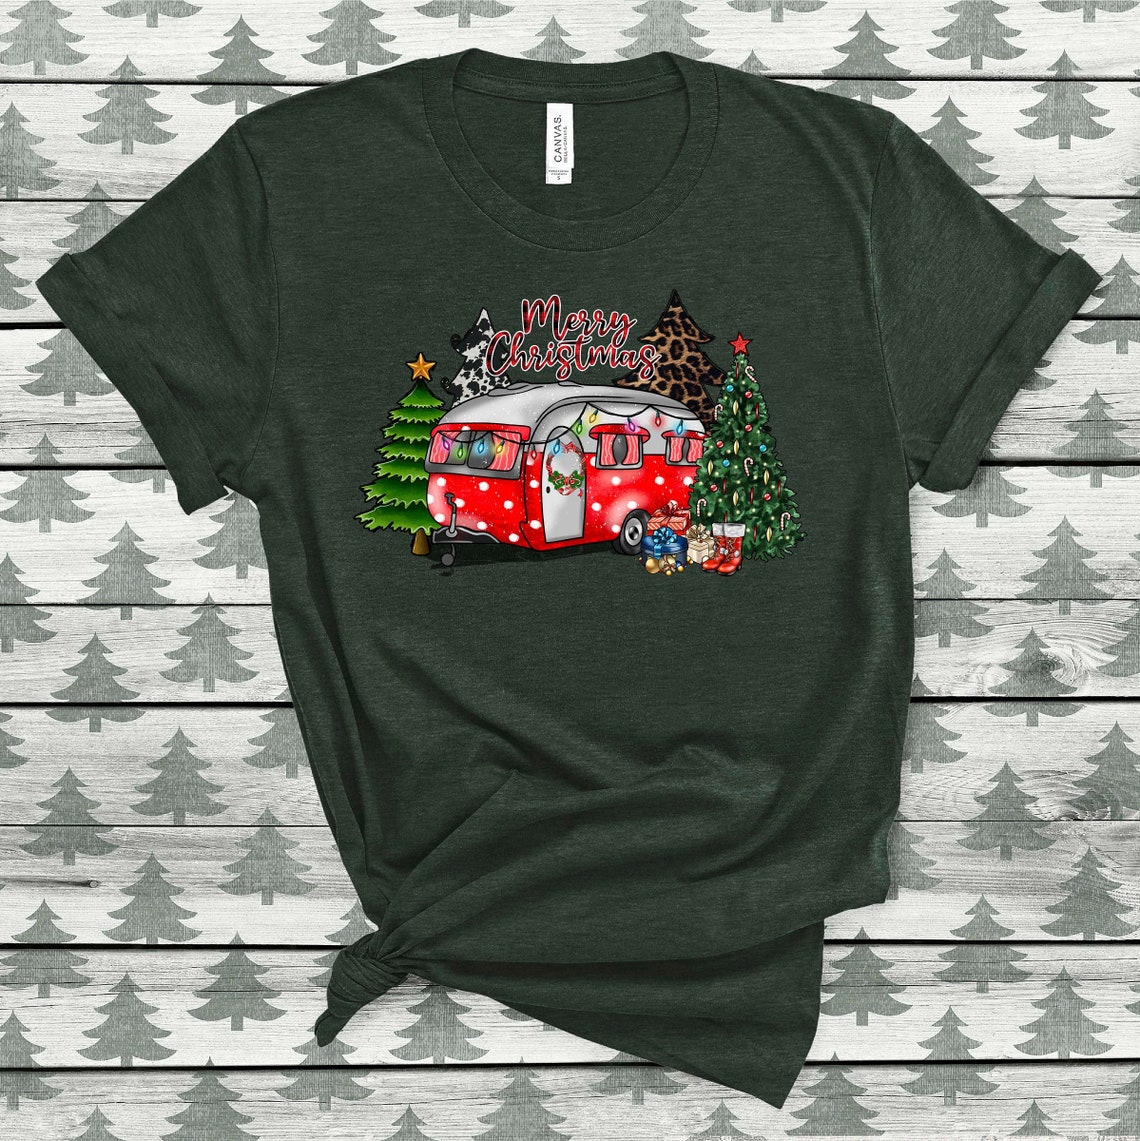 Christmas Caravan Tshirt, Christmas Tree Camper Shirt, Christmas Gift for Camper, Merry Christmas, Camper Shirt, Holiday Adventure